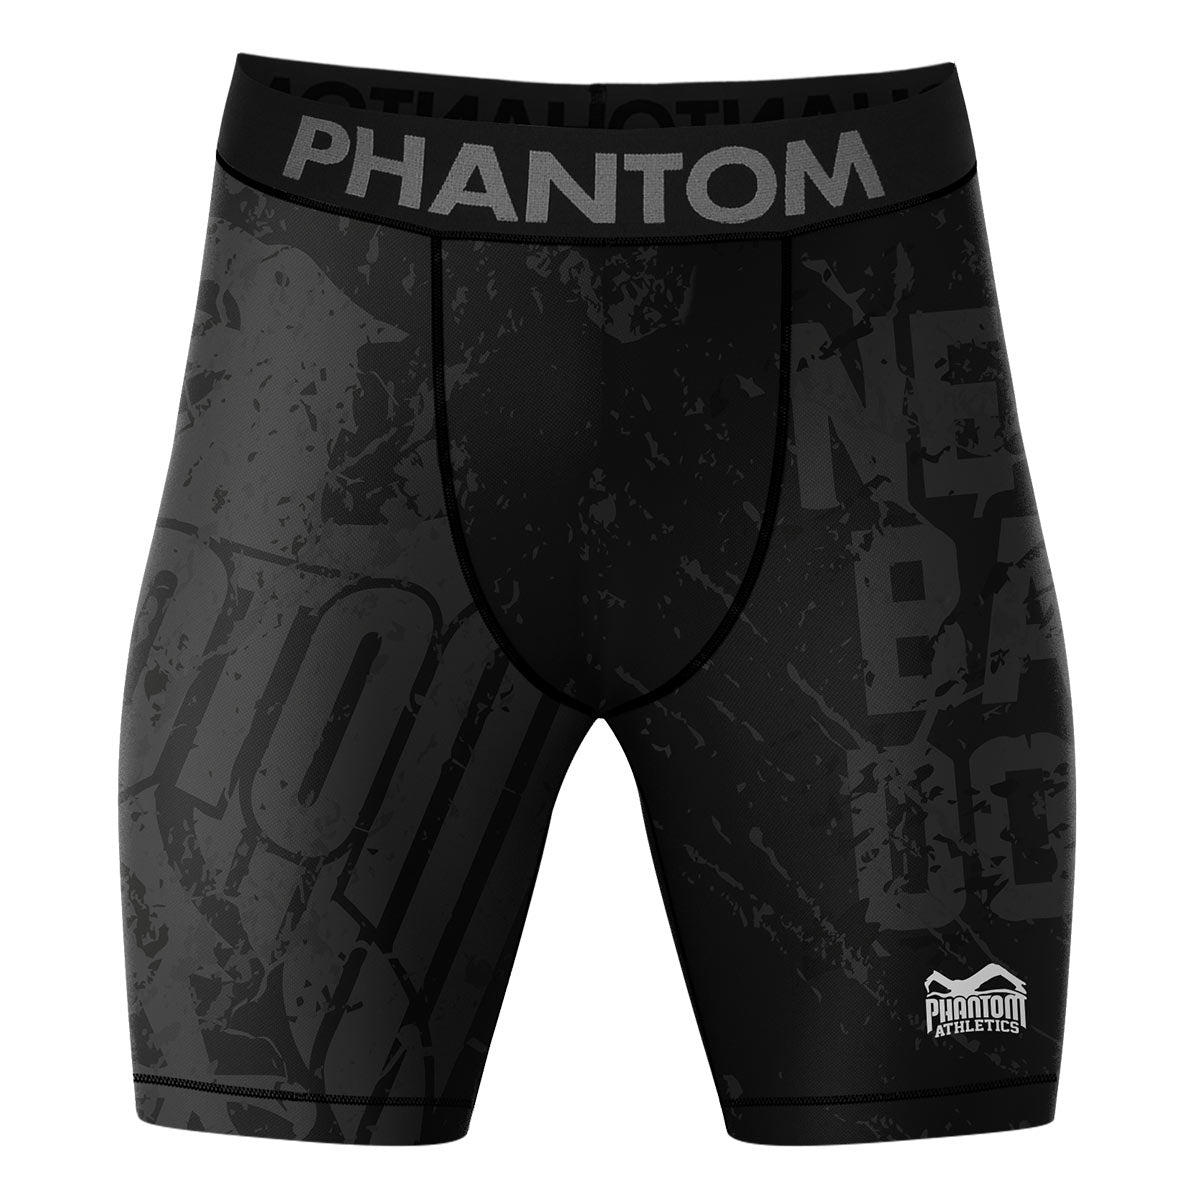 Los pantalones cortos de lucha de compresión Phantom EVO con diseño del equipo de Alemania. Con águila de Alemania y texto "Never Back Down". Ideal para tus deportes de combate, como MMA, Muay Thai, lucha libre, BJJ o kickboxing.